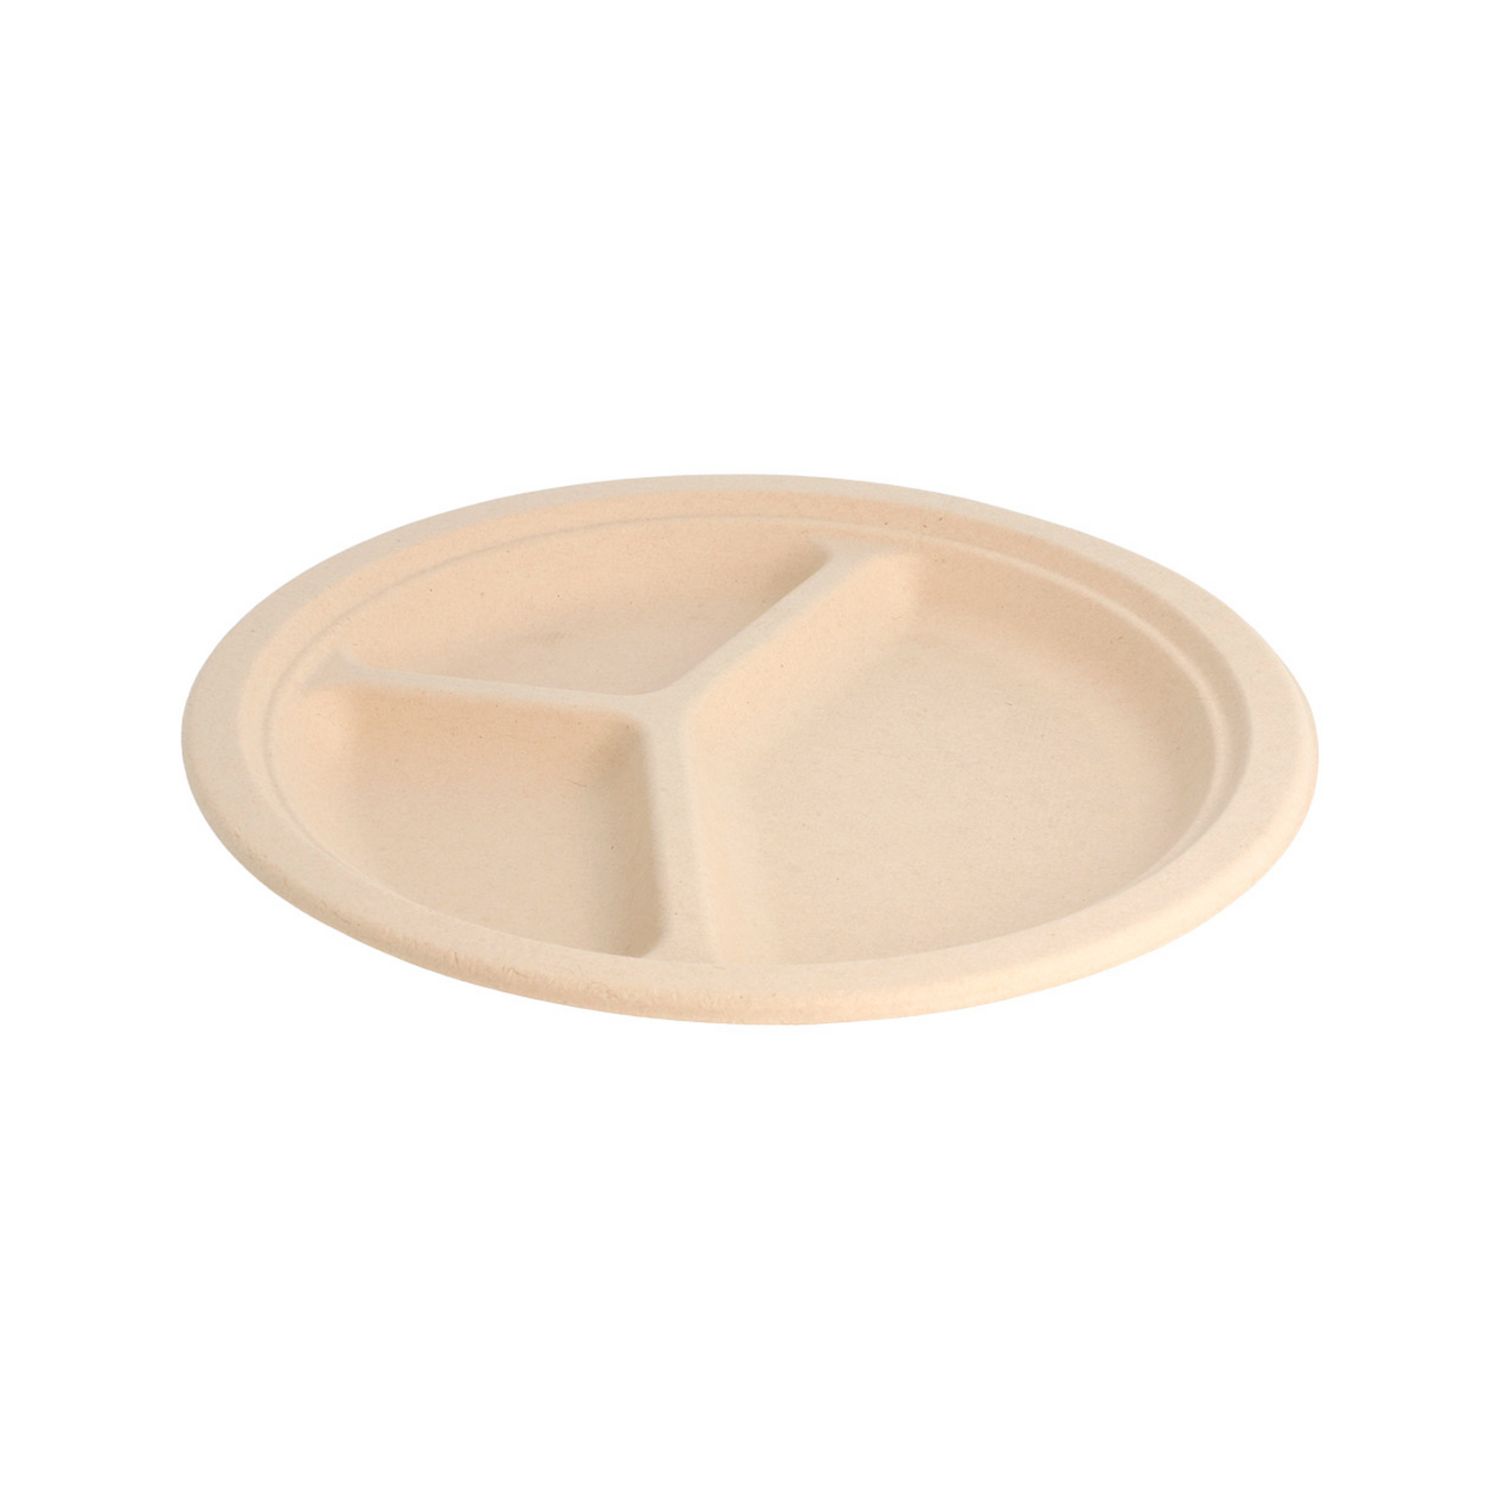 assiette-pulpe-naturel-3-compartiments-diam-26-cm-par-800-prosaveurs